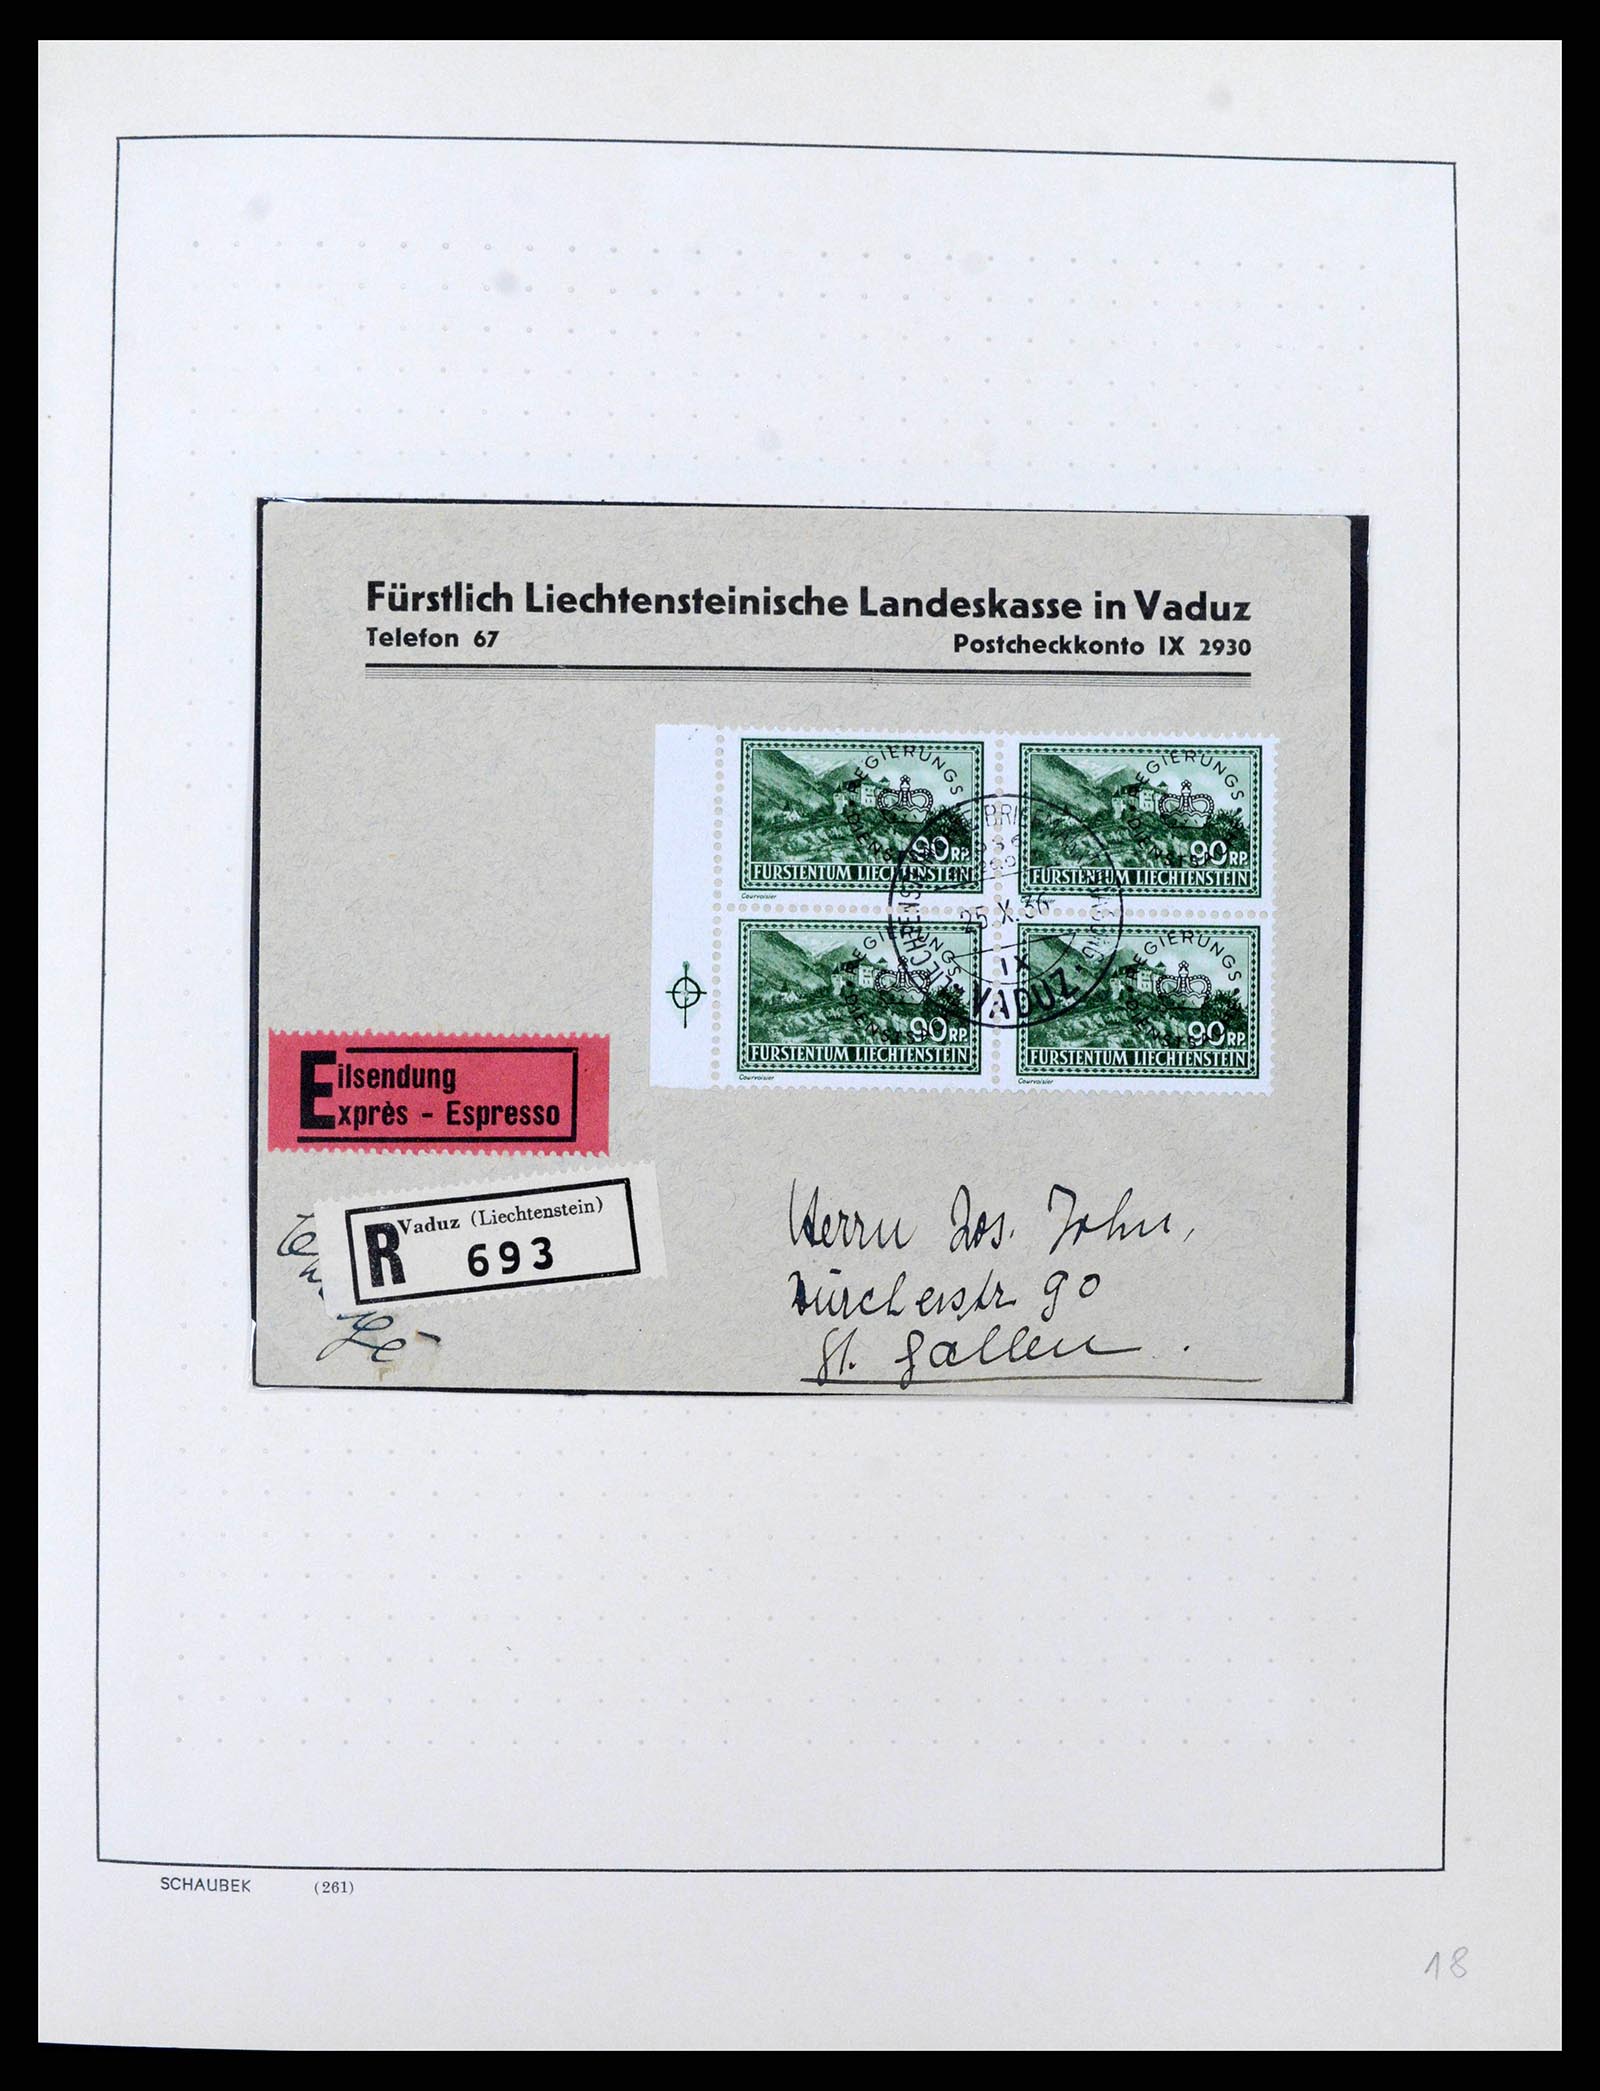 38204 0015 - Stamp collection 38204 Liechtenstein service covers 1932-1989.